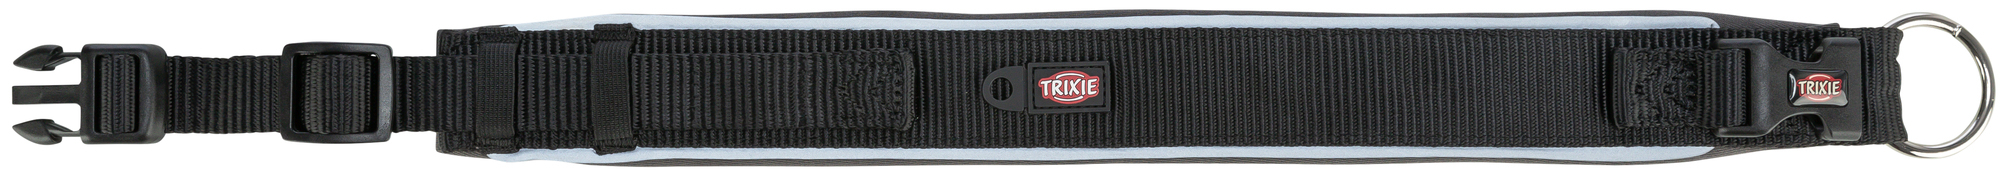 Collare Trixie Premium Extra Large - Nero/Grigio Grafite